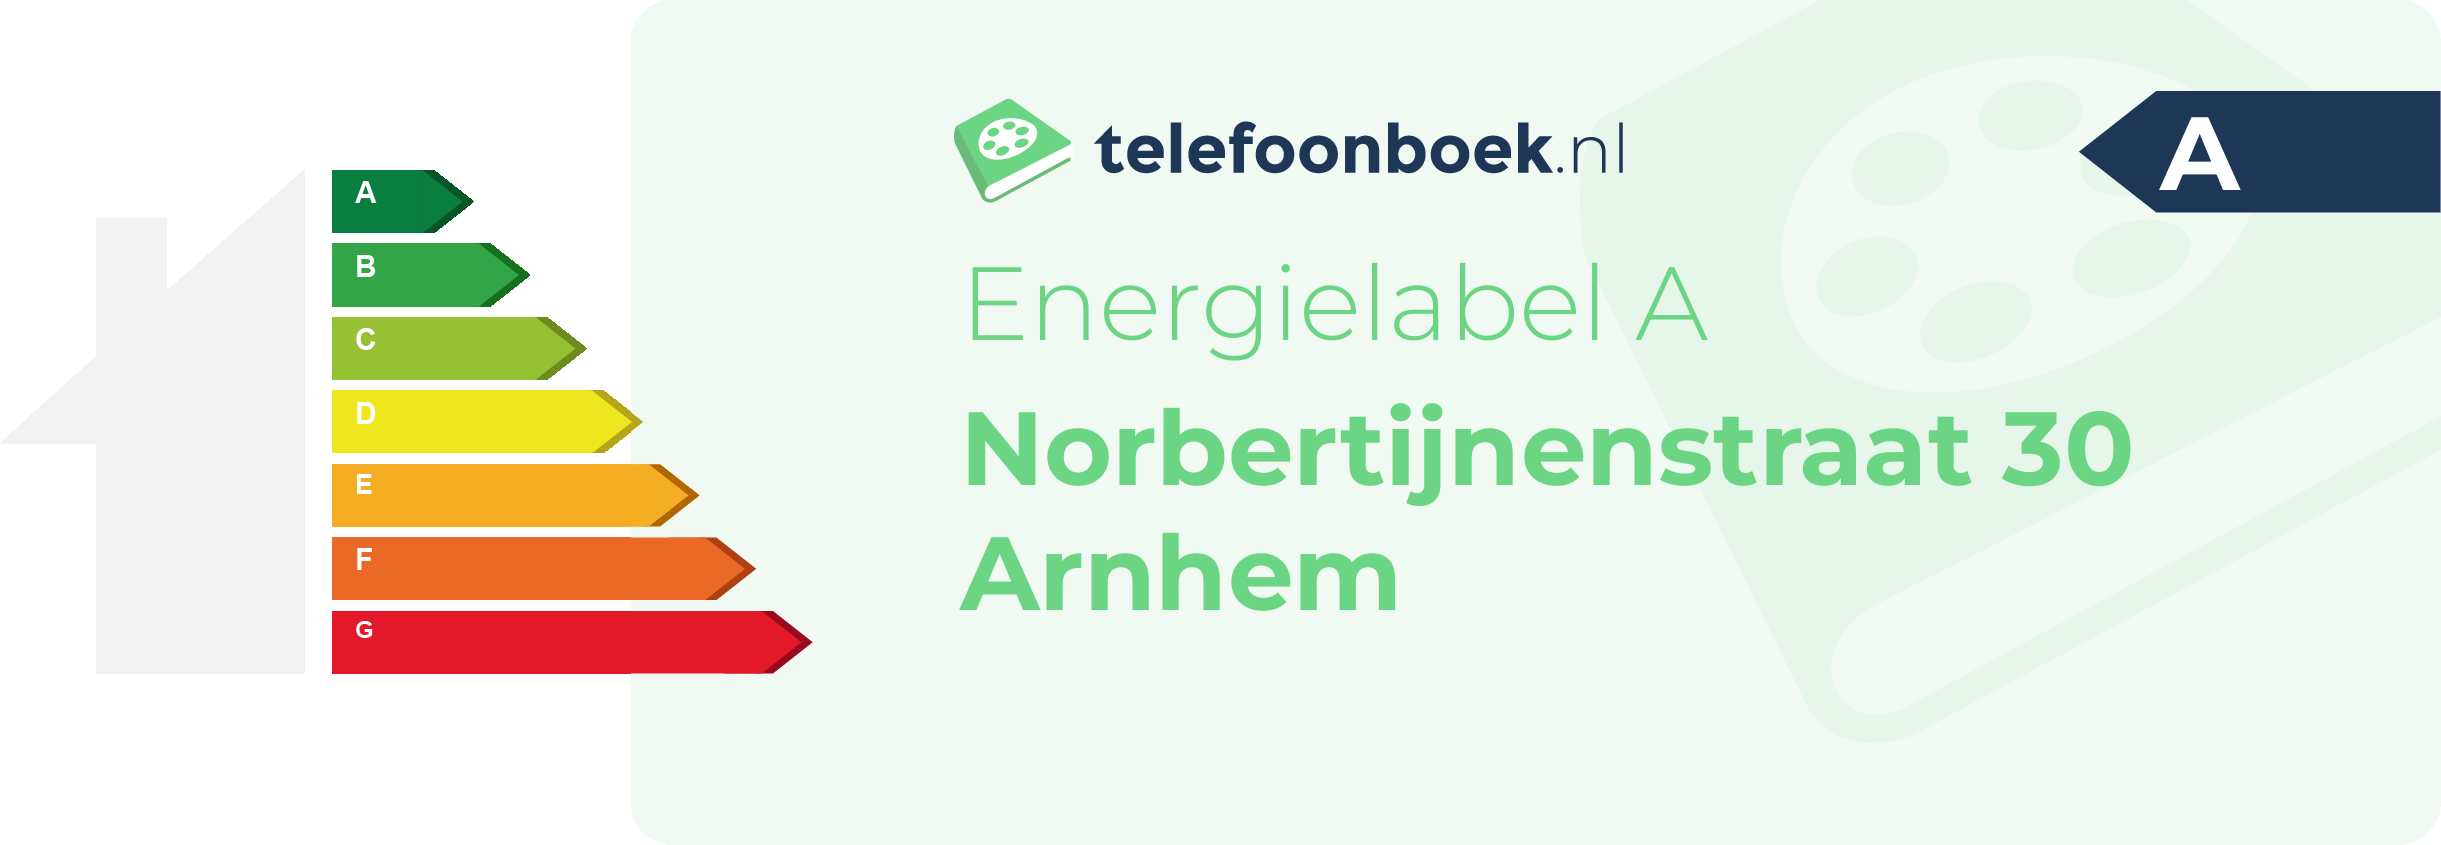 Energielabel Norbertijnenstraat 30 Arnhem